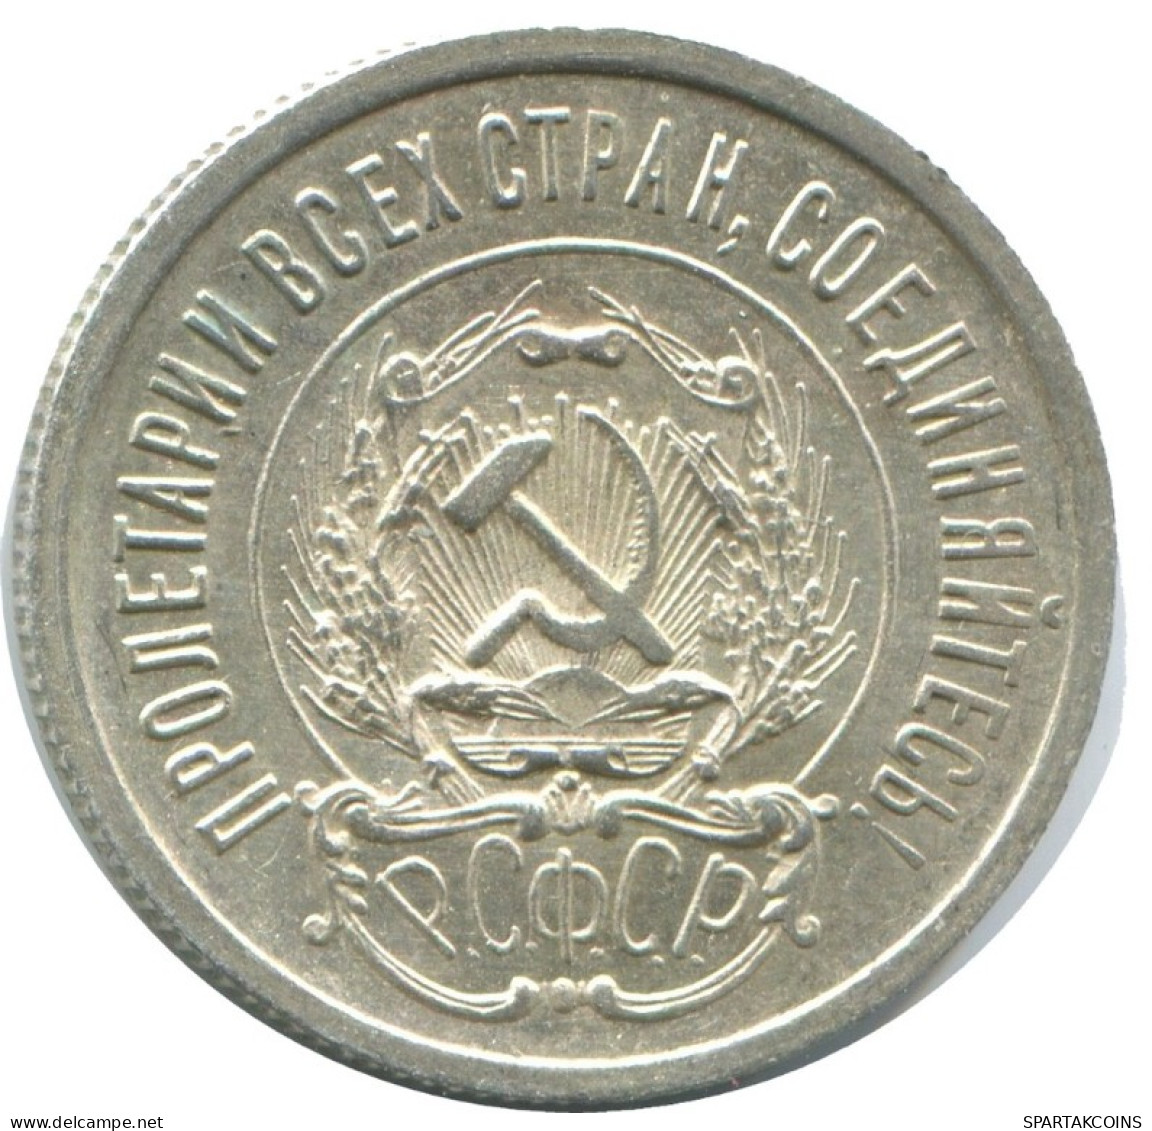 20 KOPEKS 1923 RUSSLAND RUSSIA RSFSR SILBER Münze HIGH GRADE #AF699.D.A - Rusia